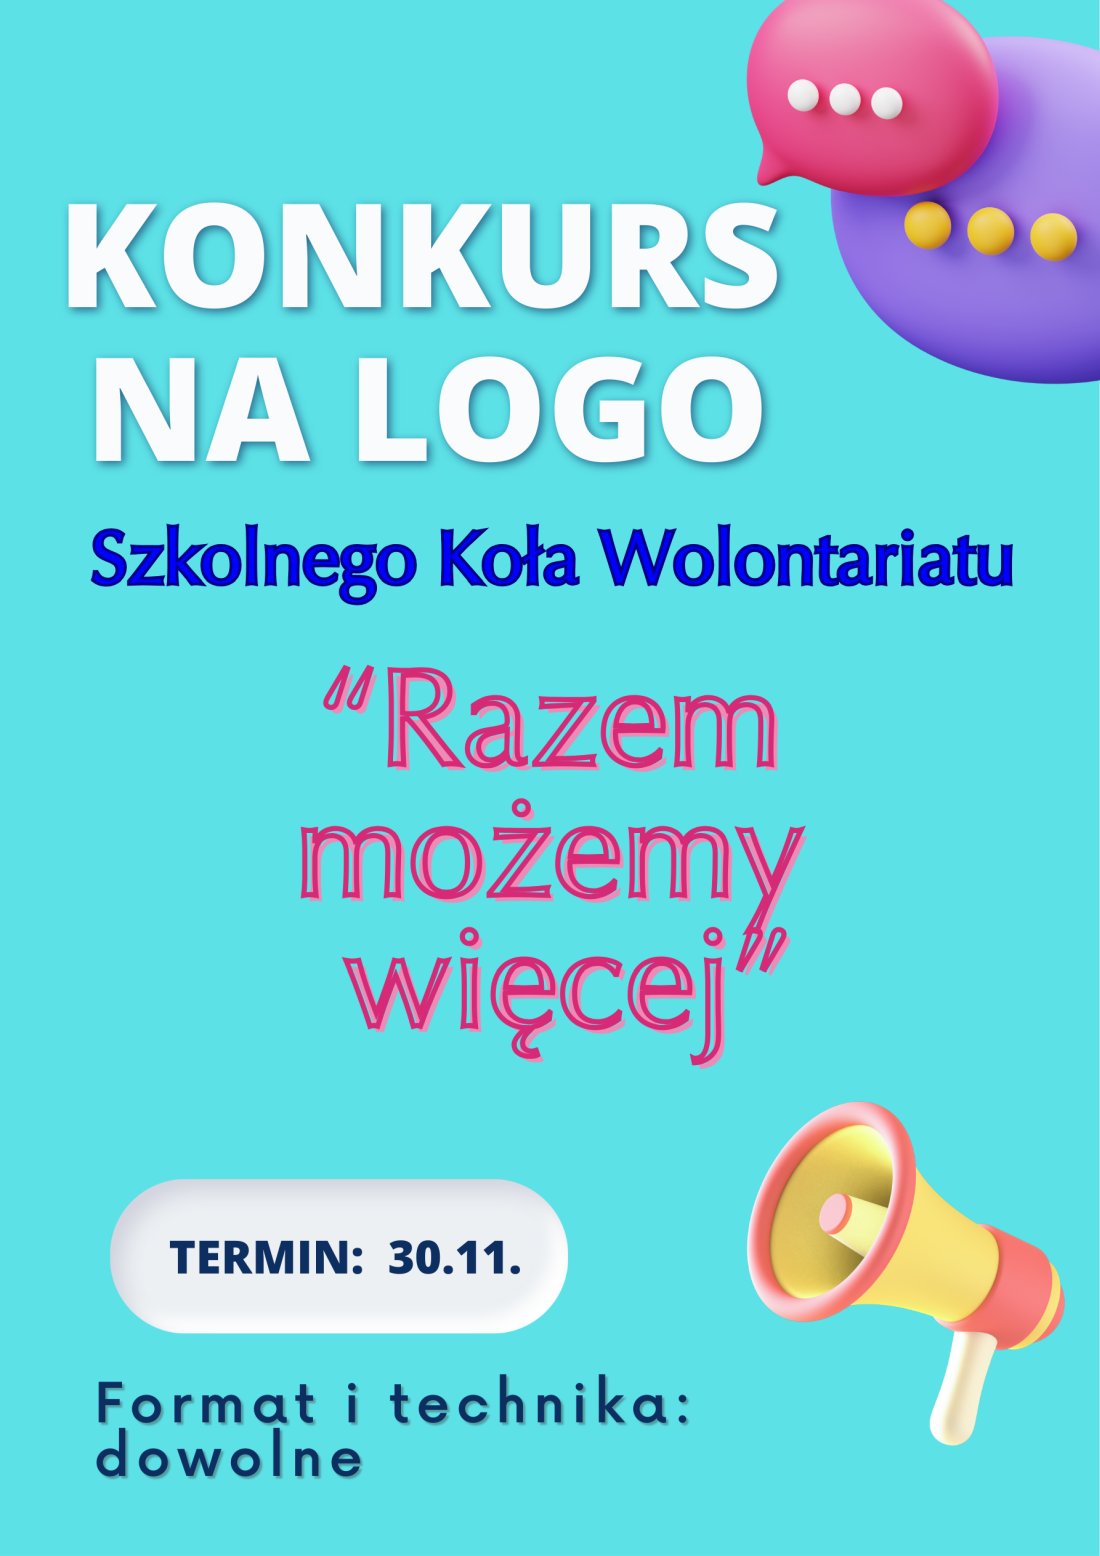 Konkurs na logo wolontariatu - plakat informacyjny